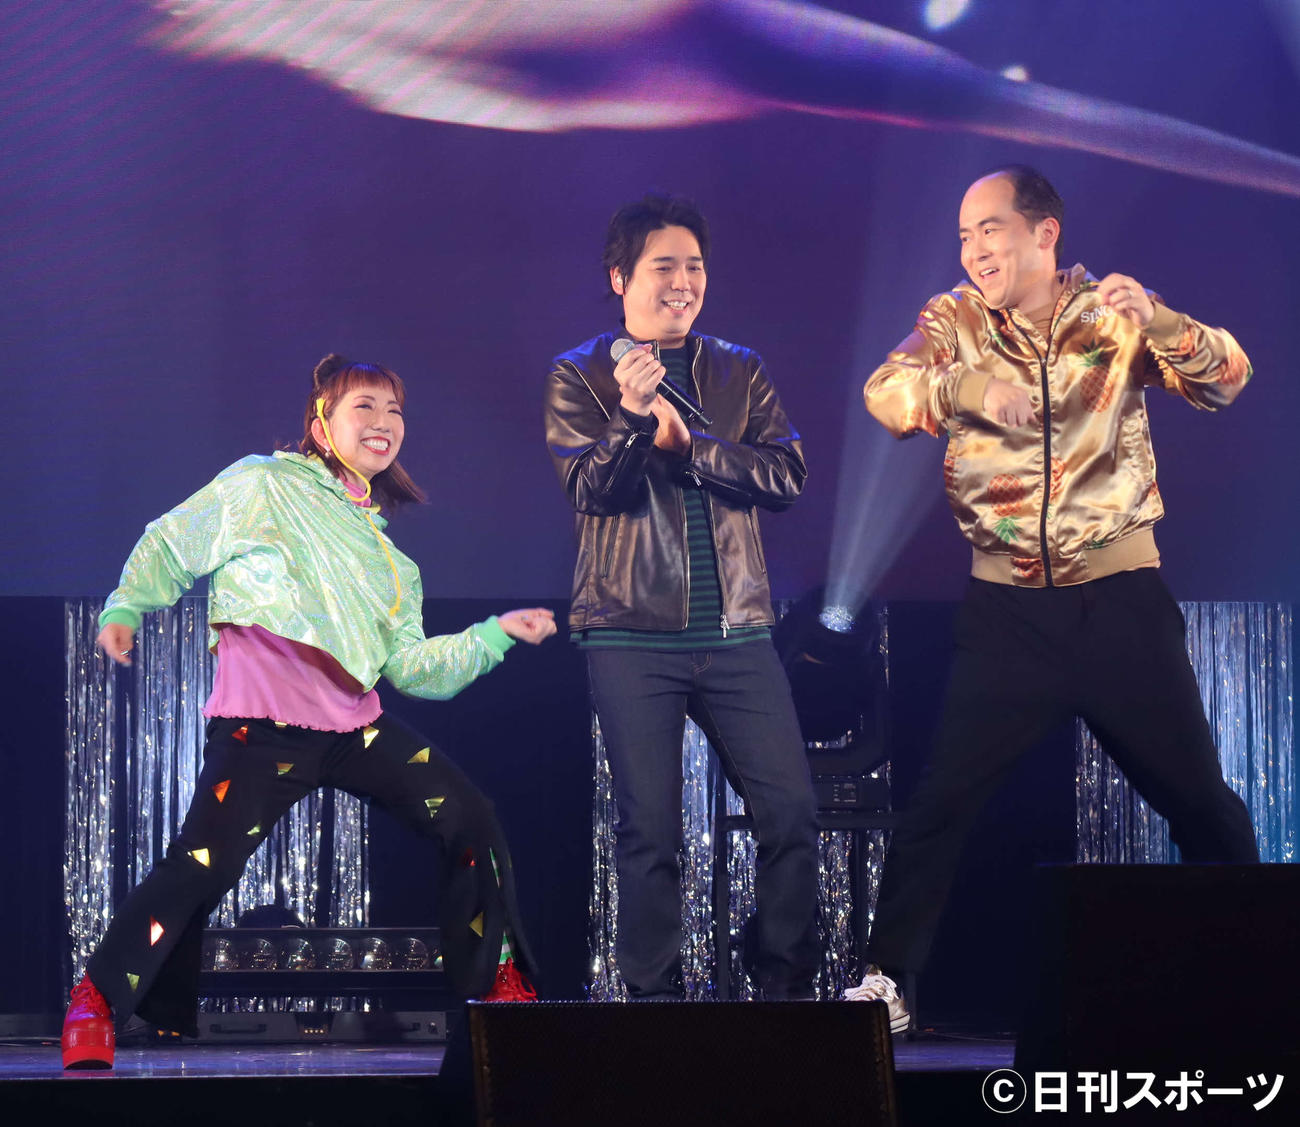 映画「SING／シング:ネクストステージ」のイベントで歌唱するスキマスイッチの大橋卓弥（中央）、ダンスパフォーマンスするakane（左）とスキマスイッチの斎藤司